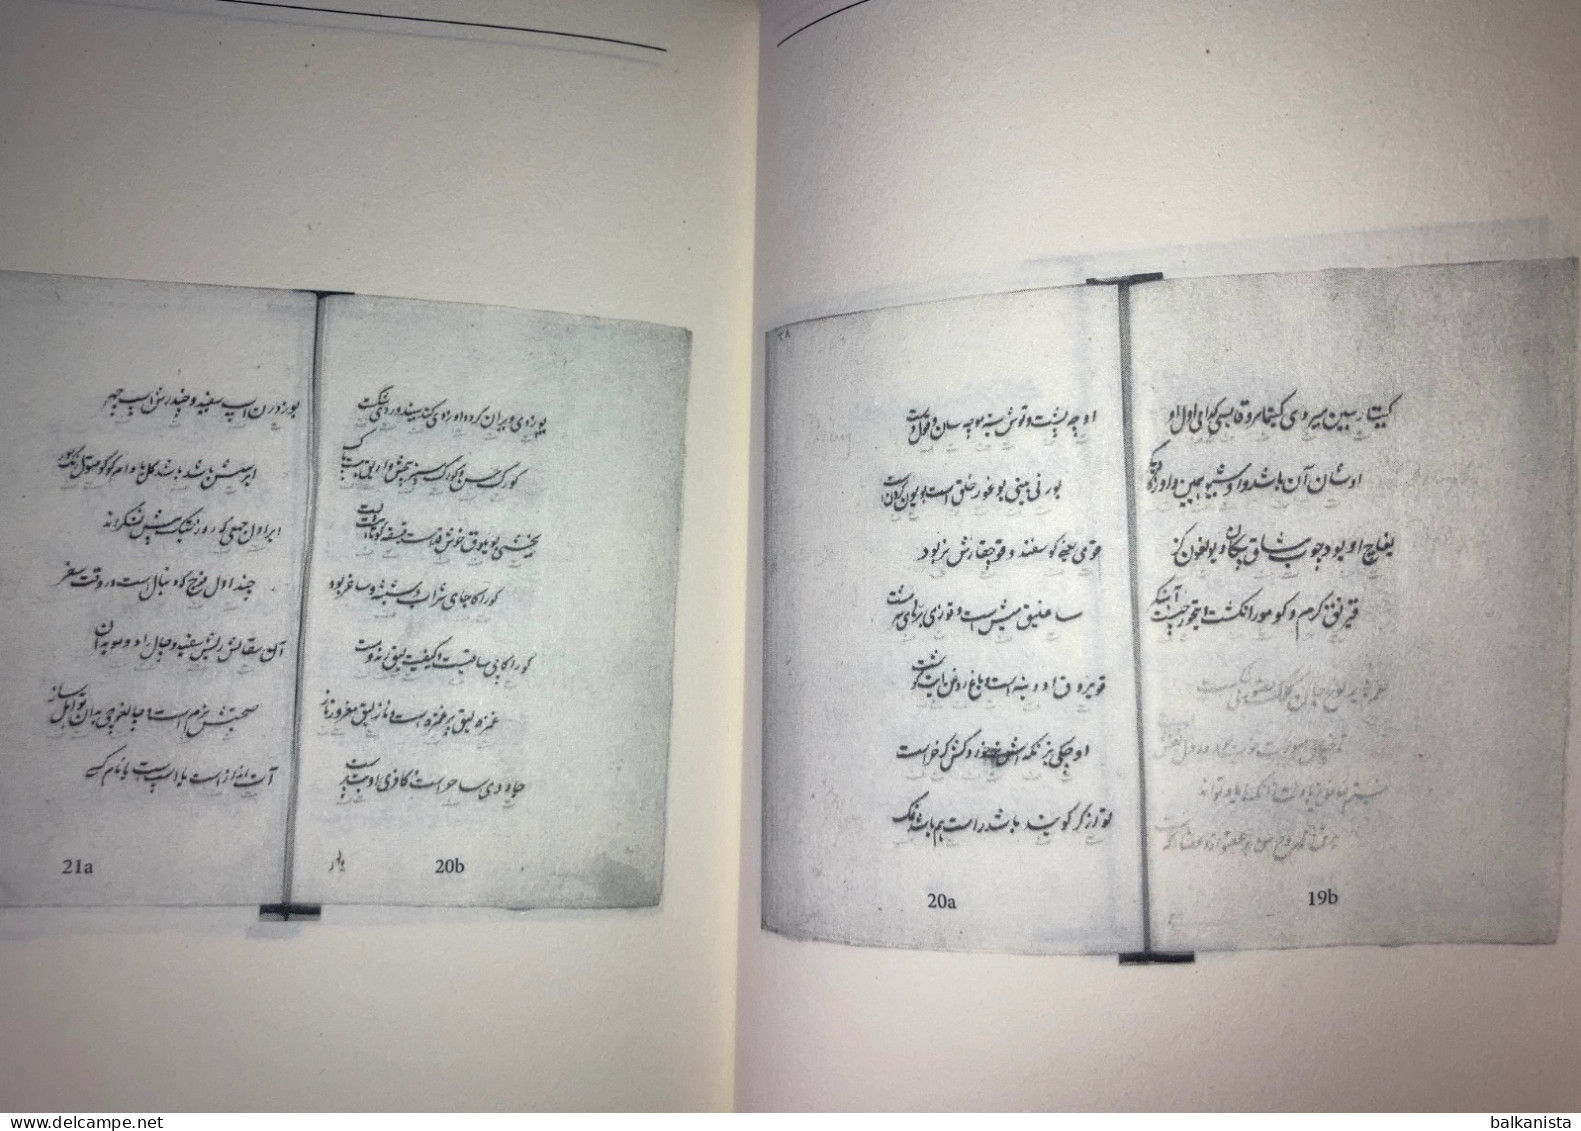 Nisab-i Turki - Nisab-i Türki-i Turan  - Chagatai Persian Dictionary - Dizionari